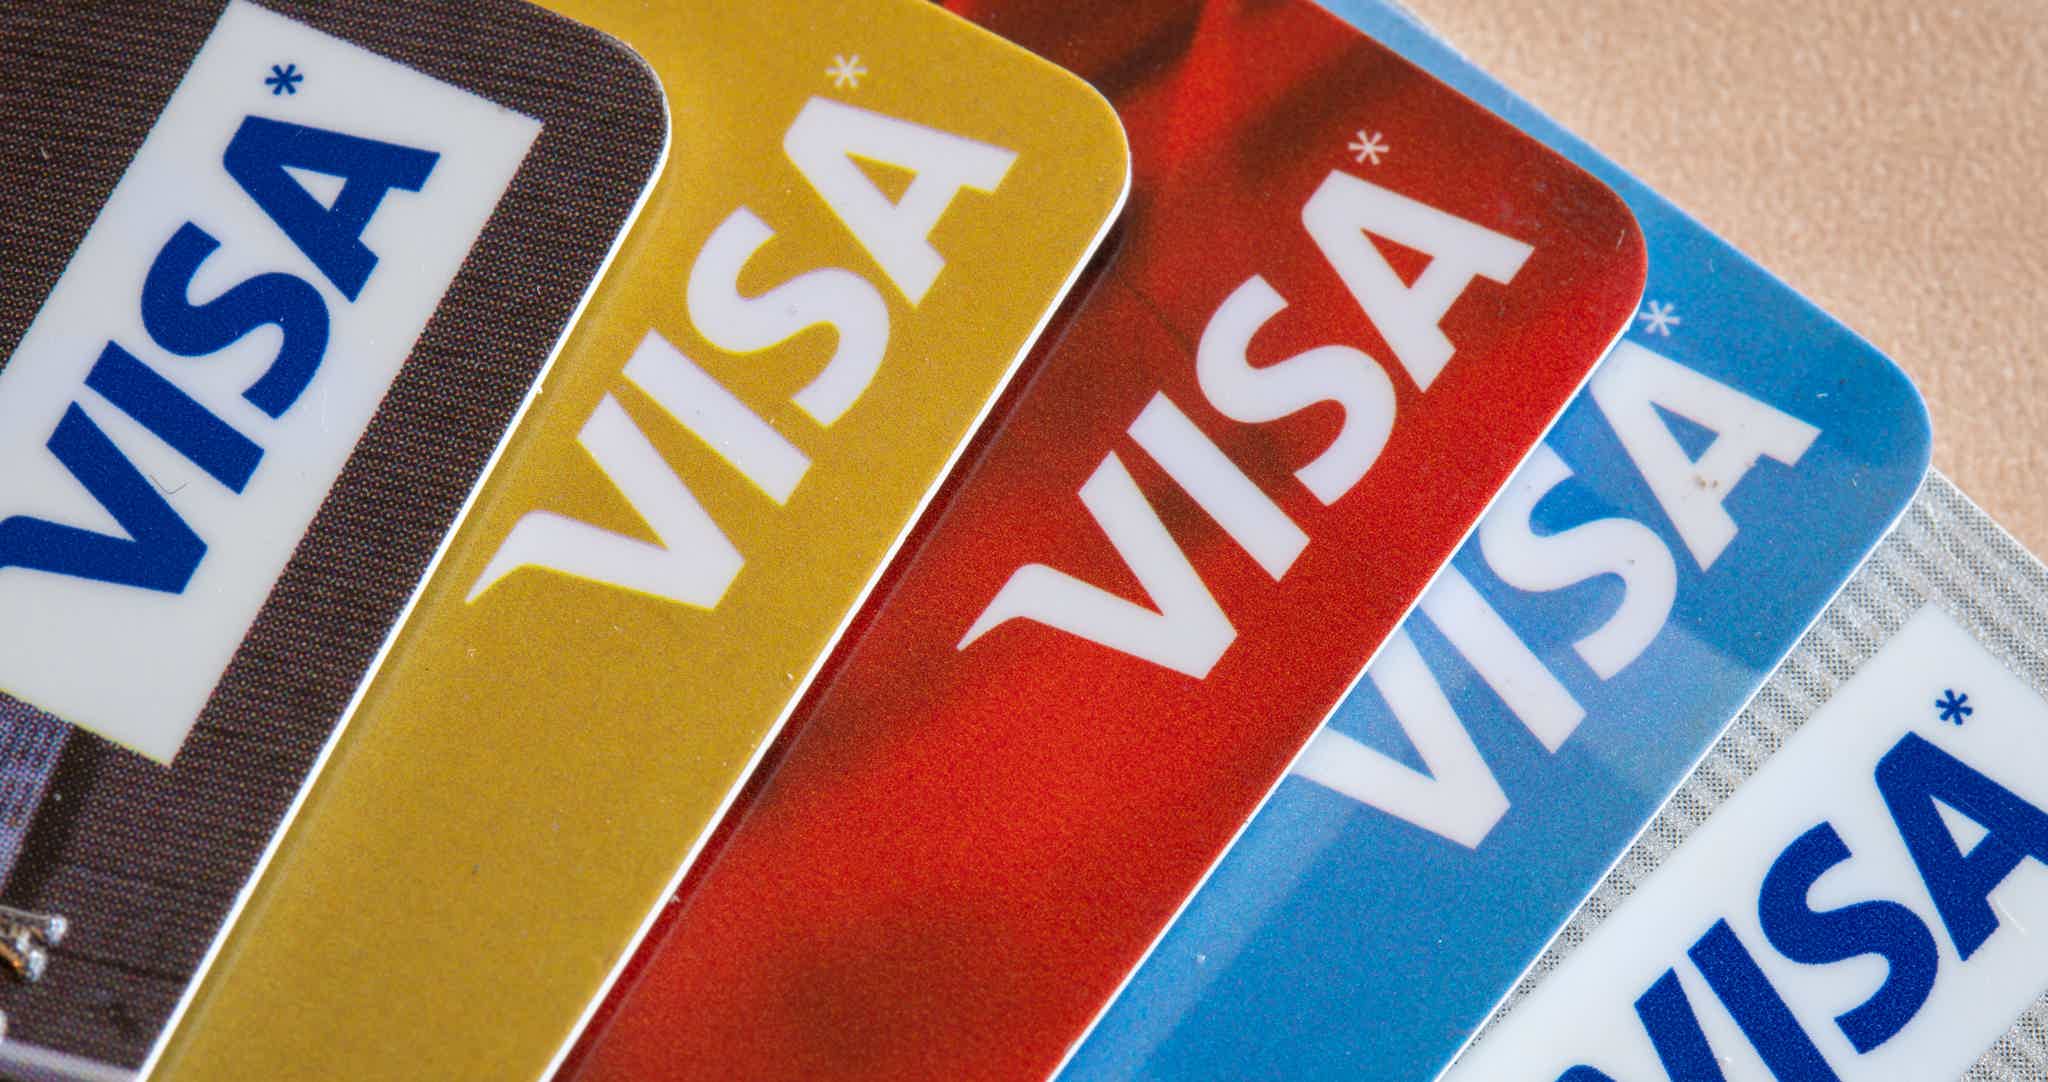 Pick your favorite Visa Infinite credit card. Source: Adobe Stock.